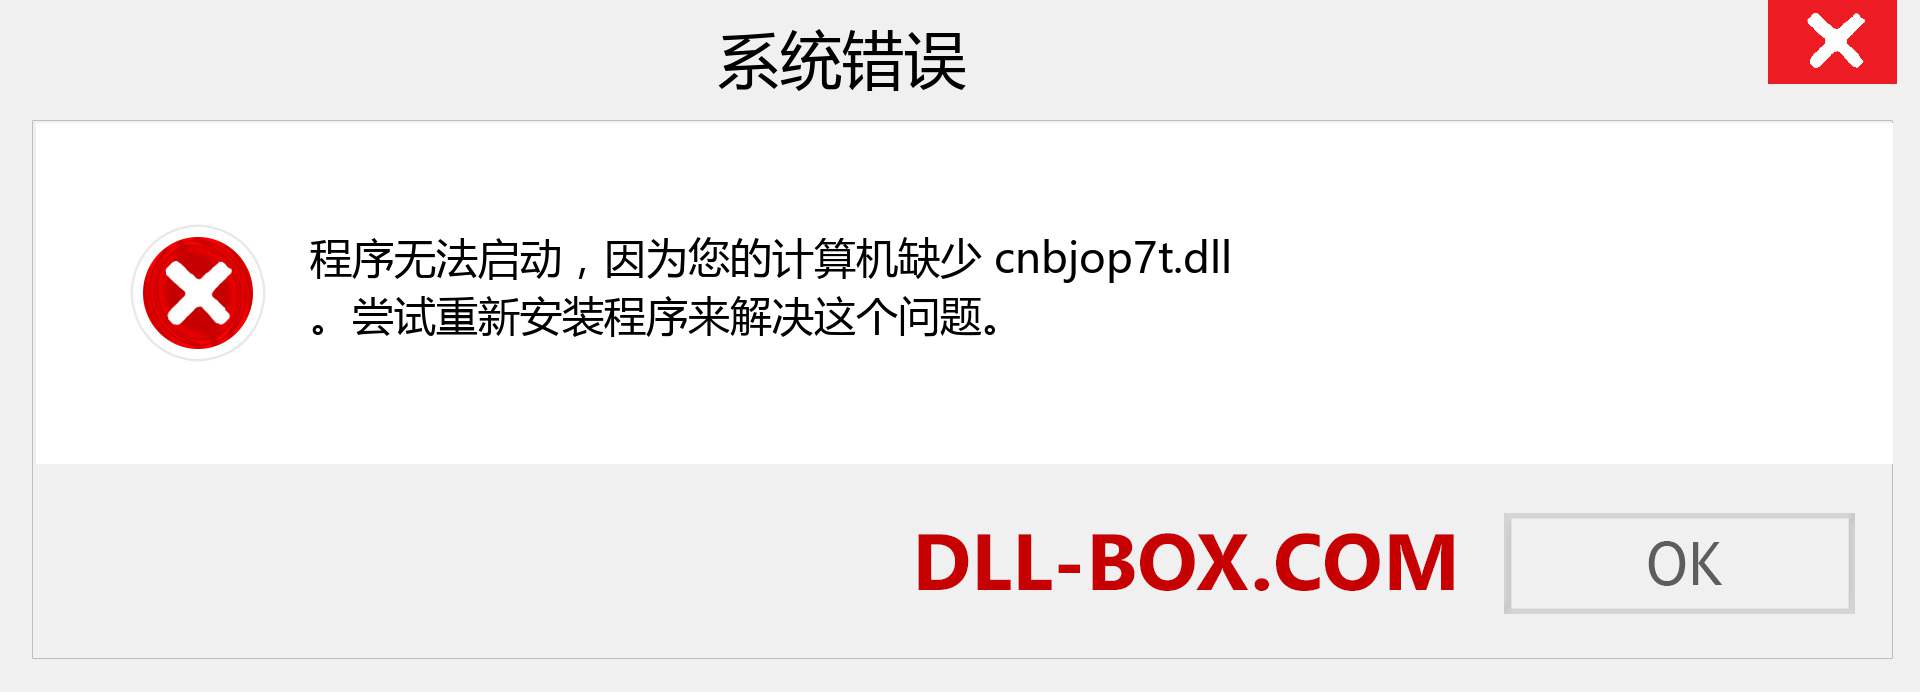 cnbjop7t.dll 文件丢失？。 适用于 Windows 7、8、10 的下载 - 修复 Windows、照片、图像上的 cnbjop7t dll 丢失错误